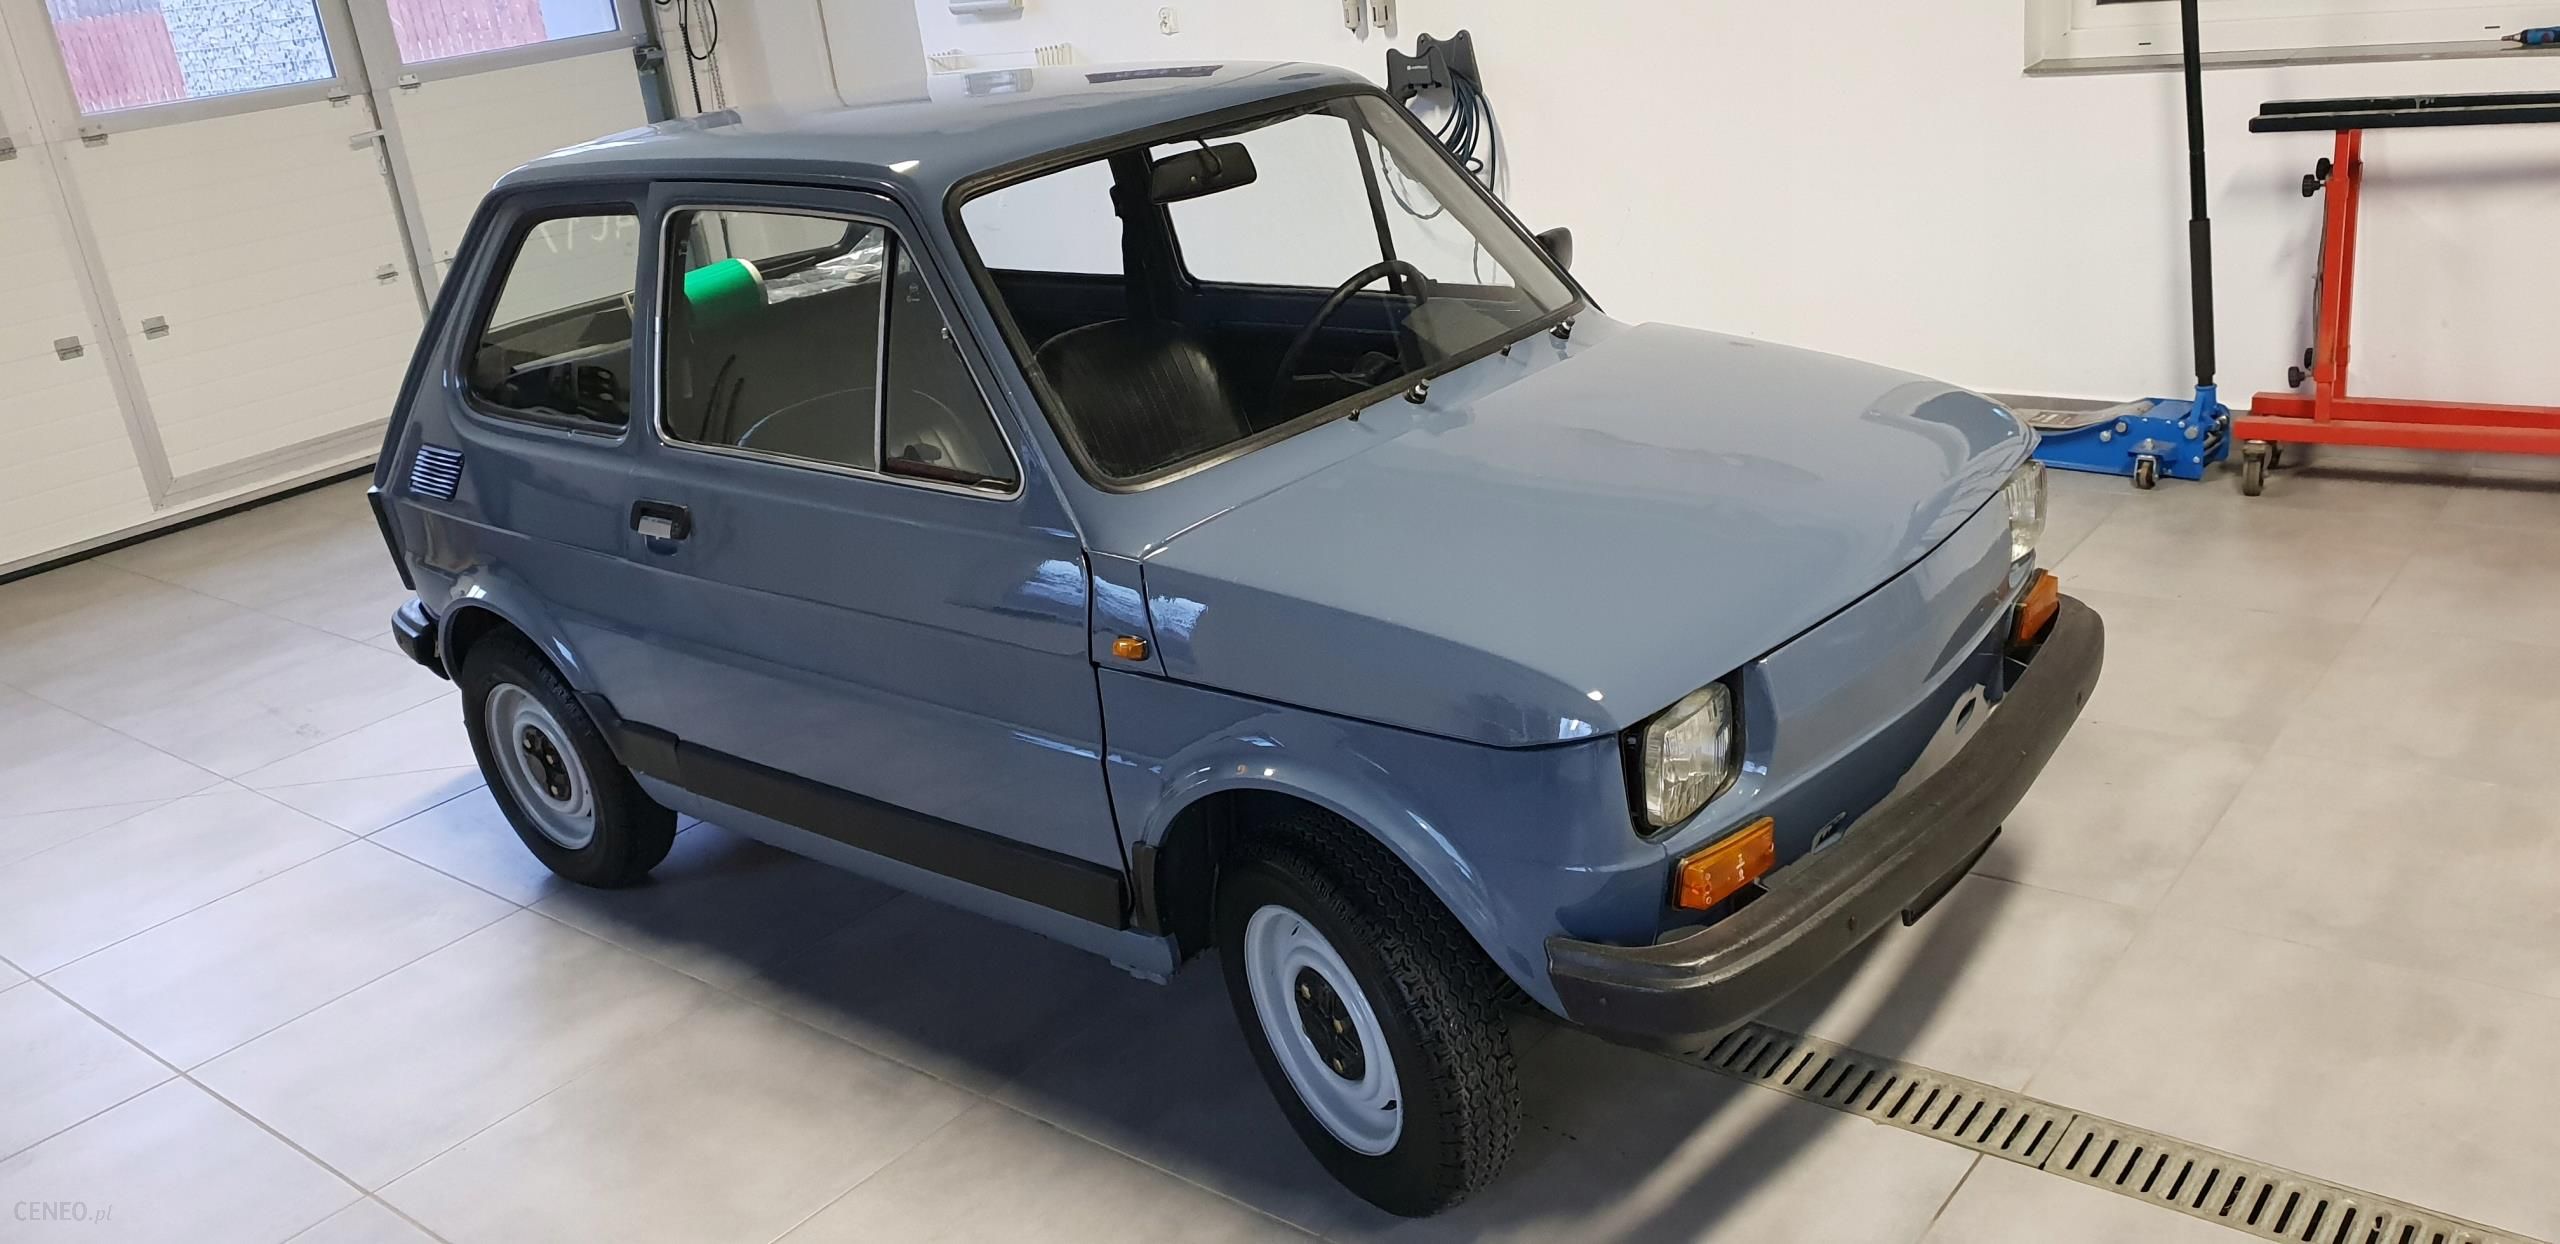 Fiat 126P Rok Produkcji 1986 Nowy 1400 Km - Opinie I Ceny Na Ceneo.pl